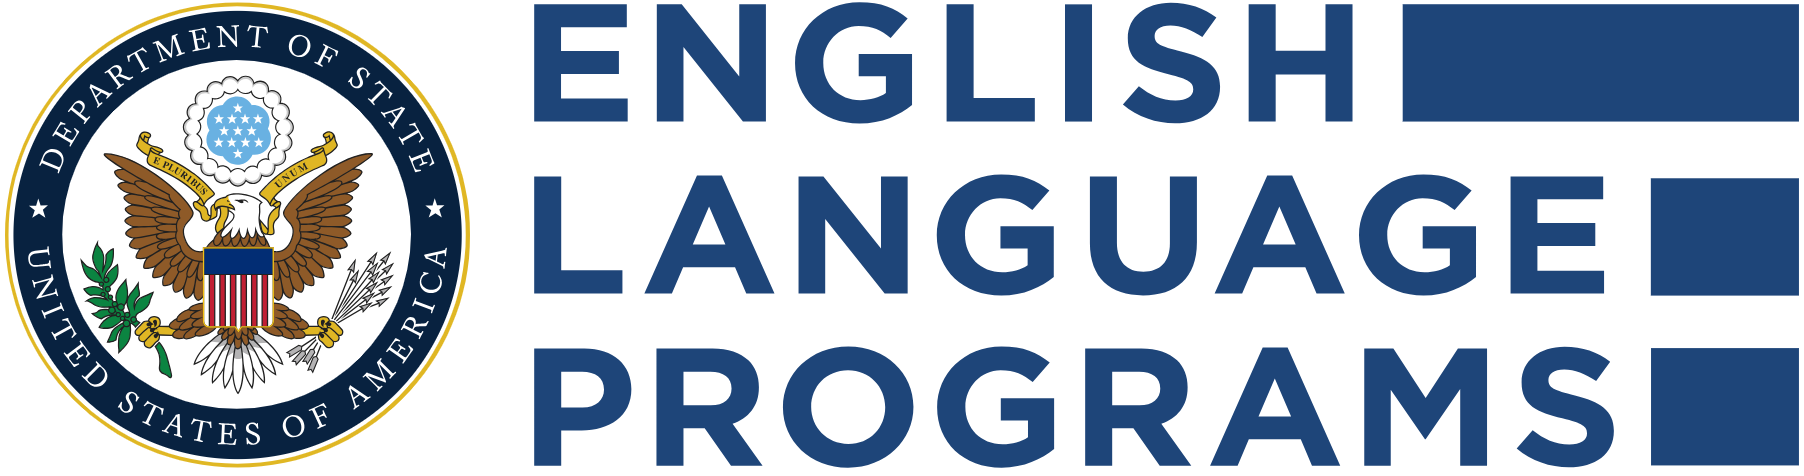 9. English Language Programs.png